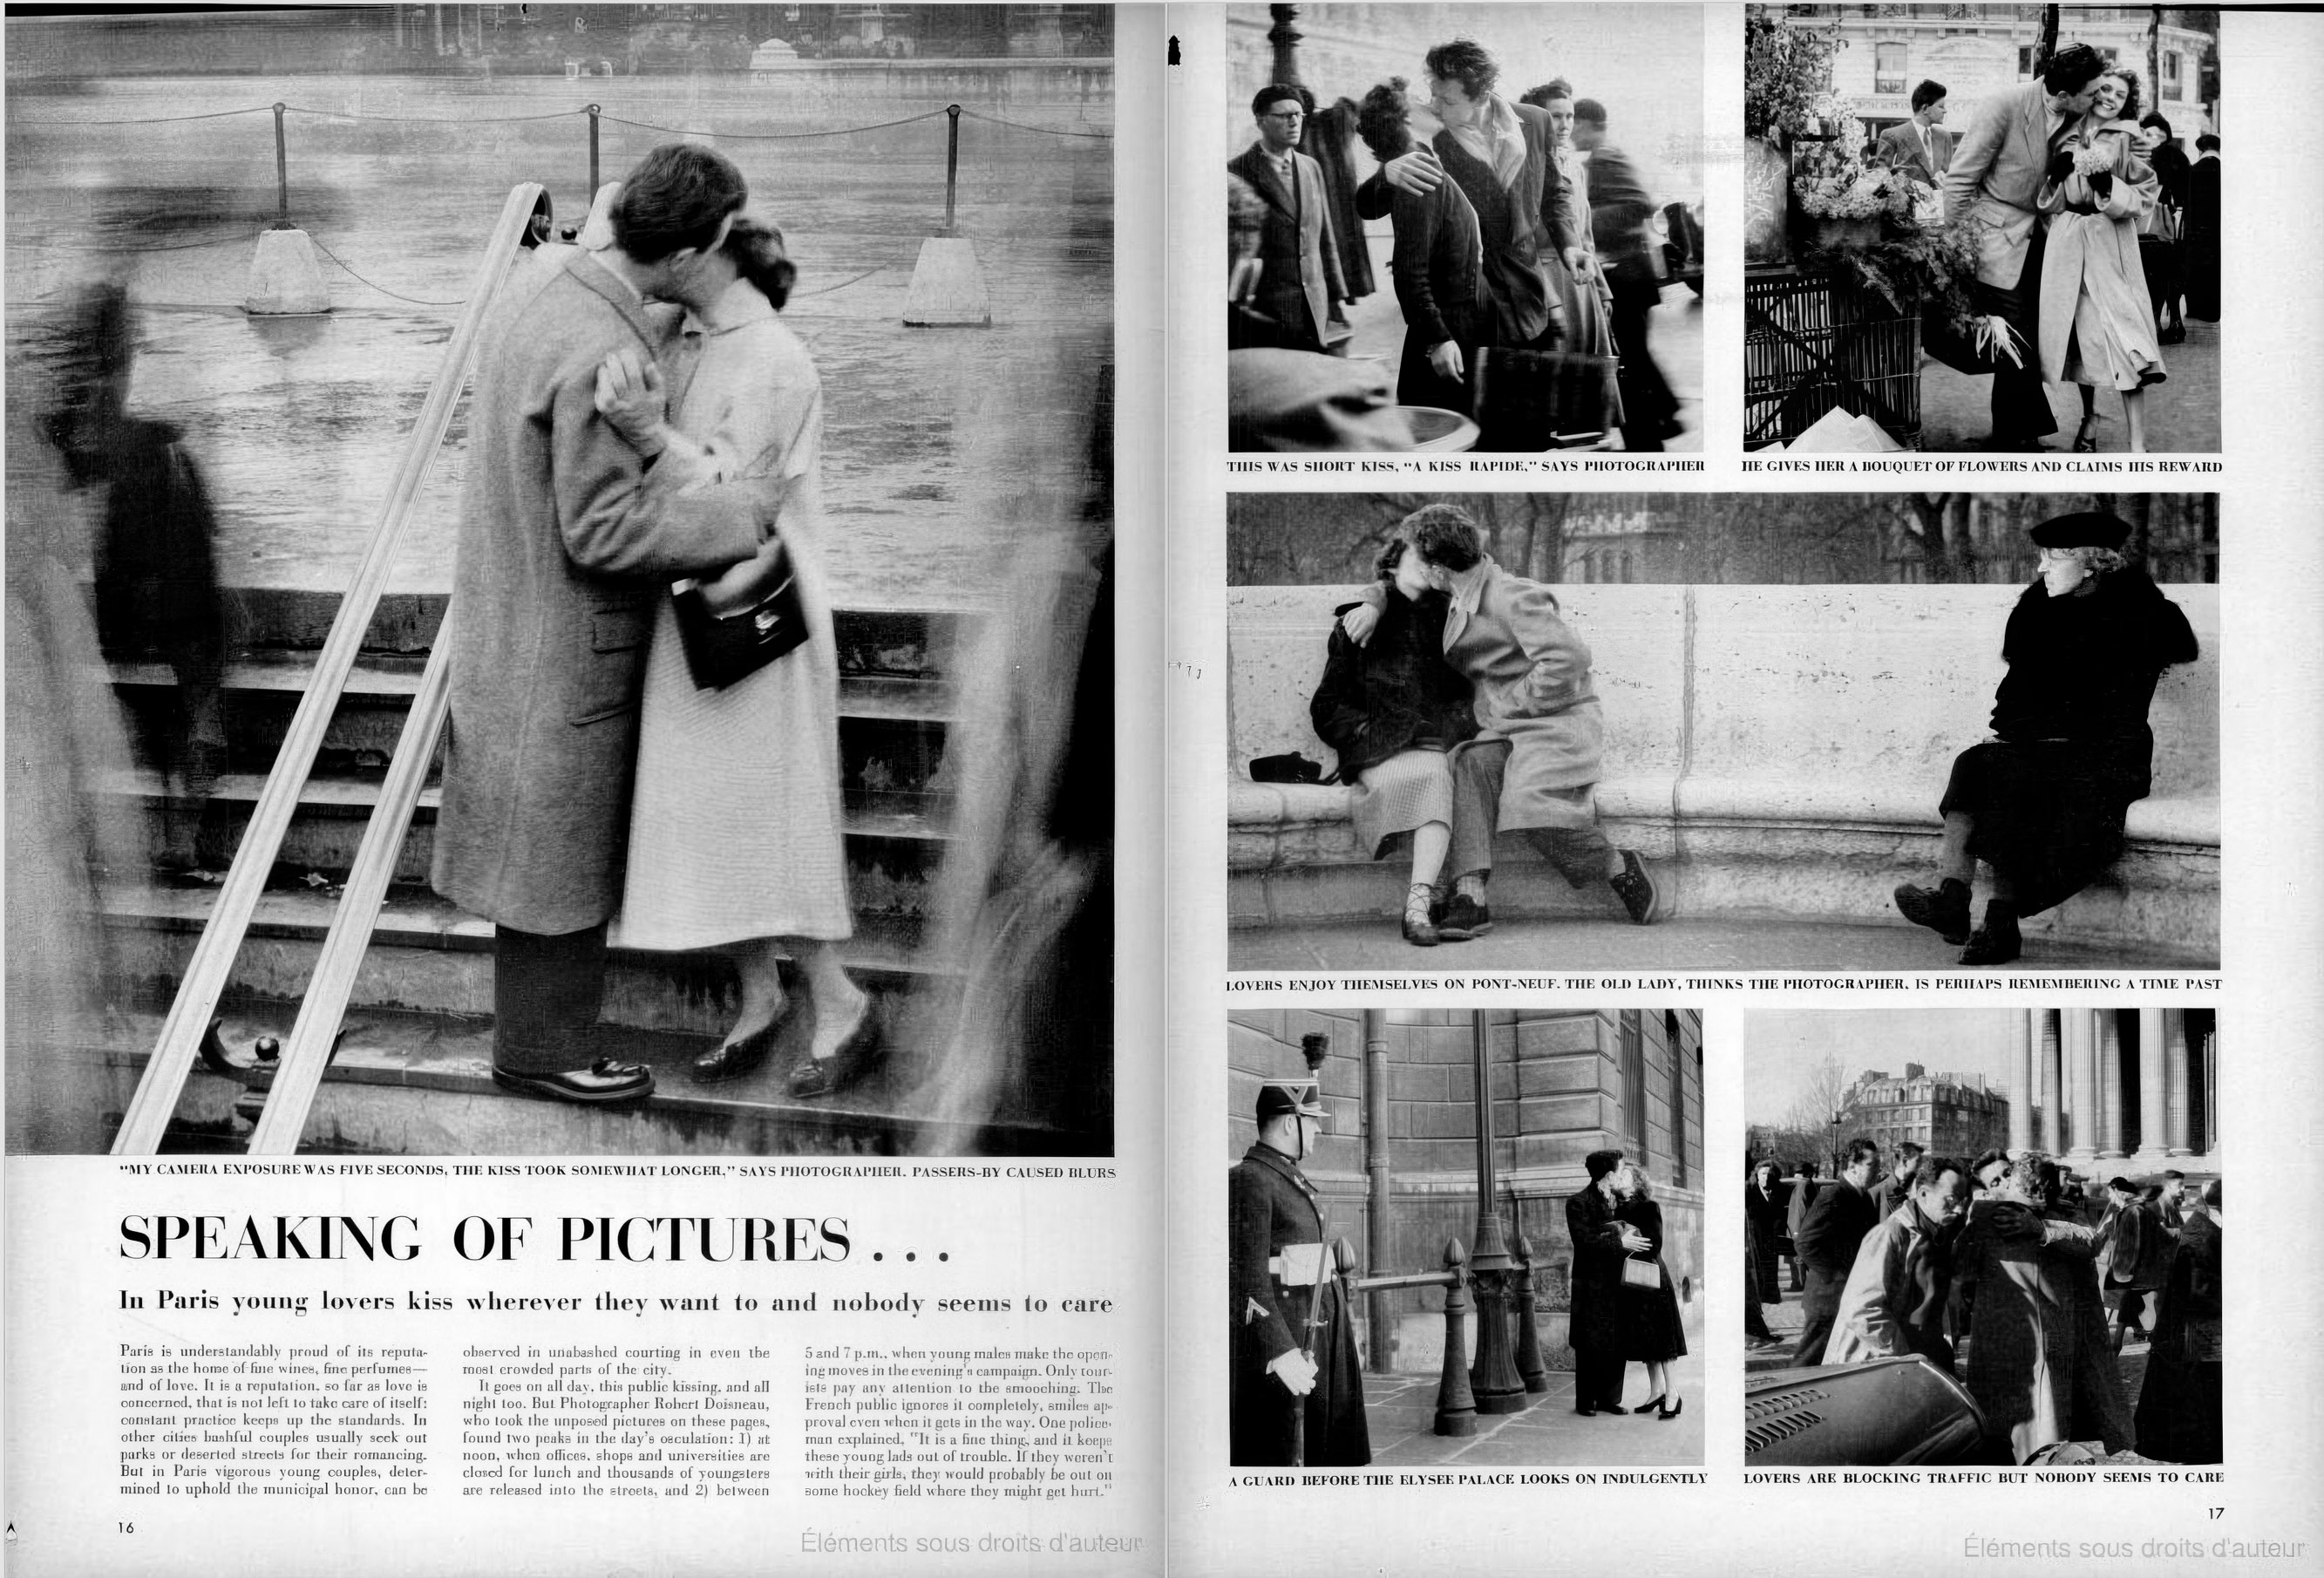 Magazine Life 1950 - première diffusion du Baiser de l'hötel de ville